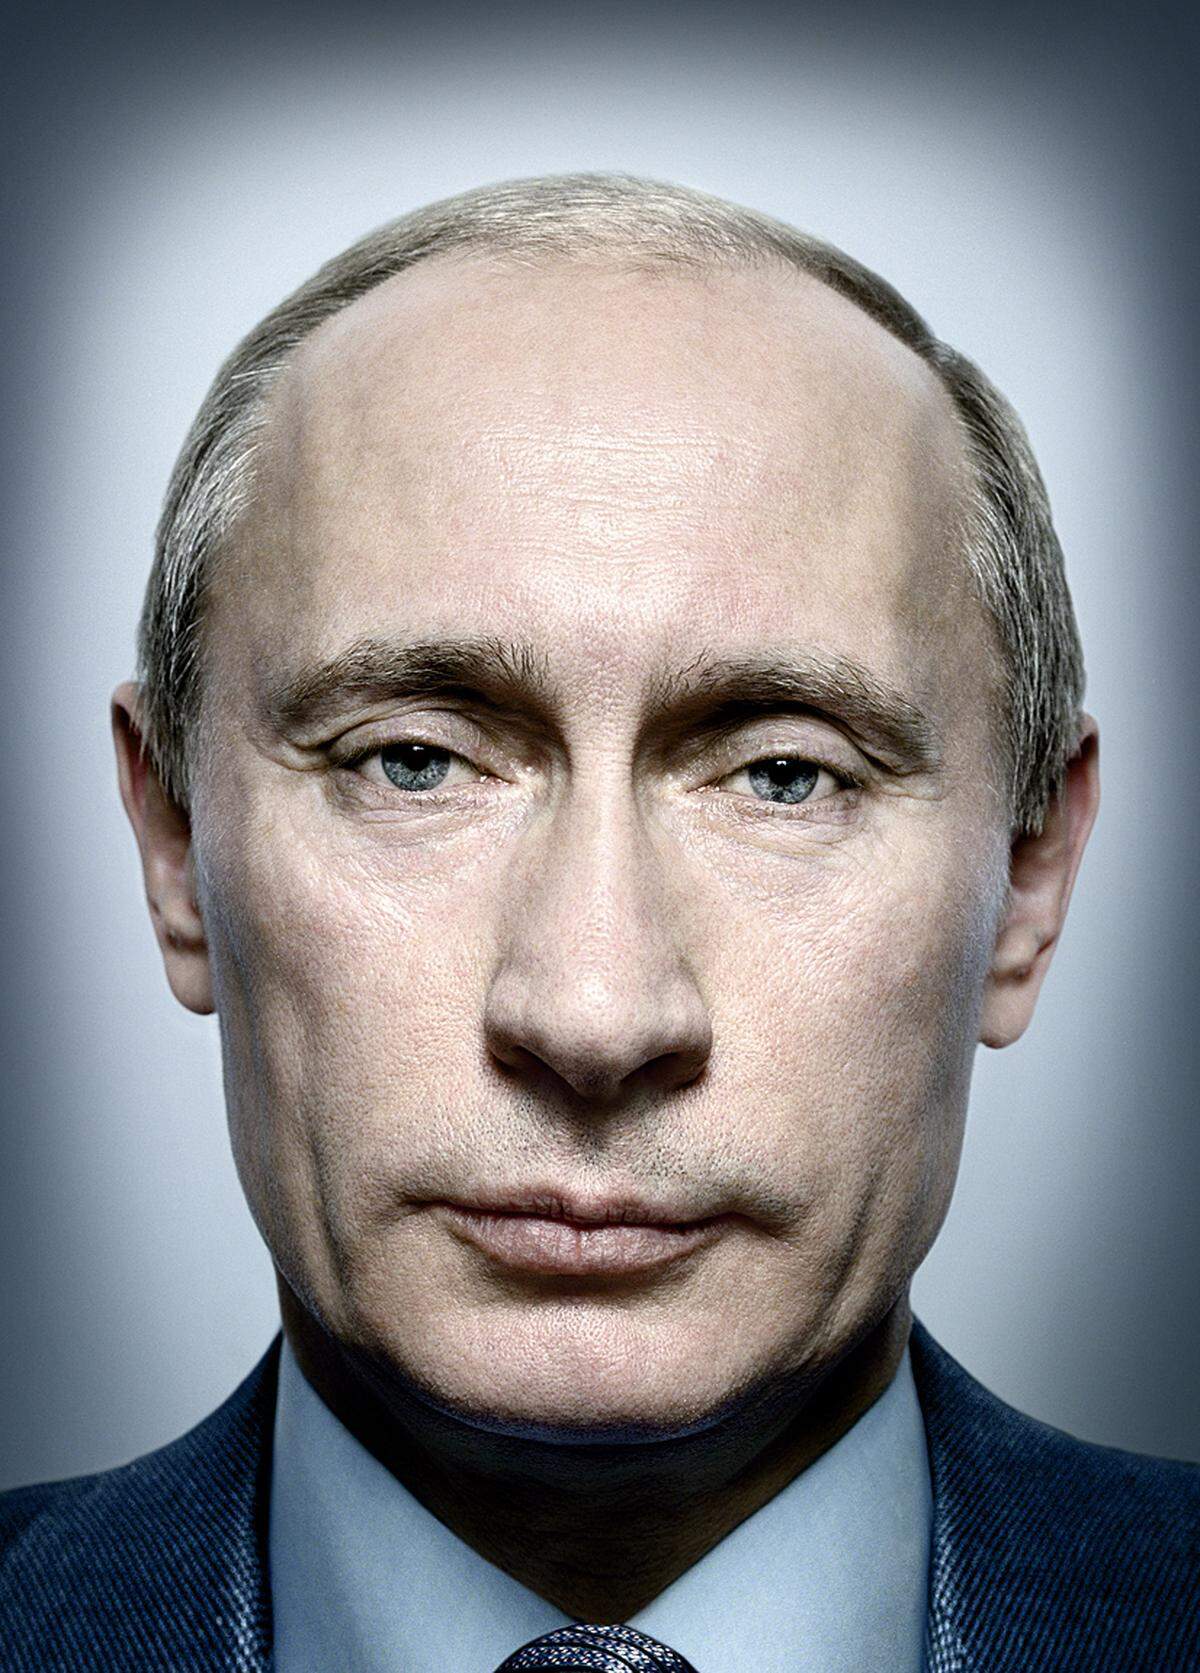 Besonders bekannt ist Platons Porträt von Wladimir Putin: Der damalige russische Präsident und jetzige Ministerpräsident wurde vom Magazin Time zum "Mann des Jahres" gekürt. Platons Foto, das auf dem Cover des Magazins abgebildet war, wurde mit einem World Press Photo Award in der Kategorie Porträt. Das Bild entstand in Russland.